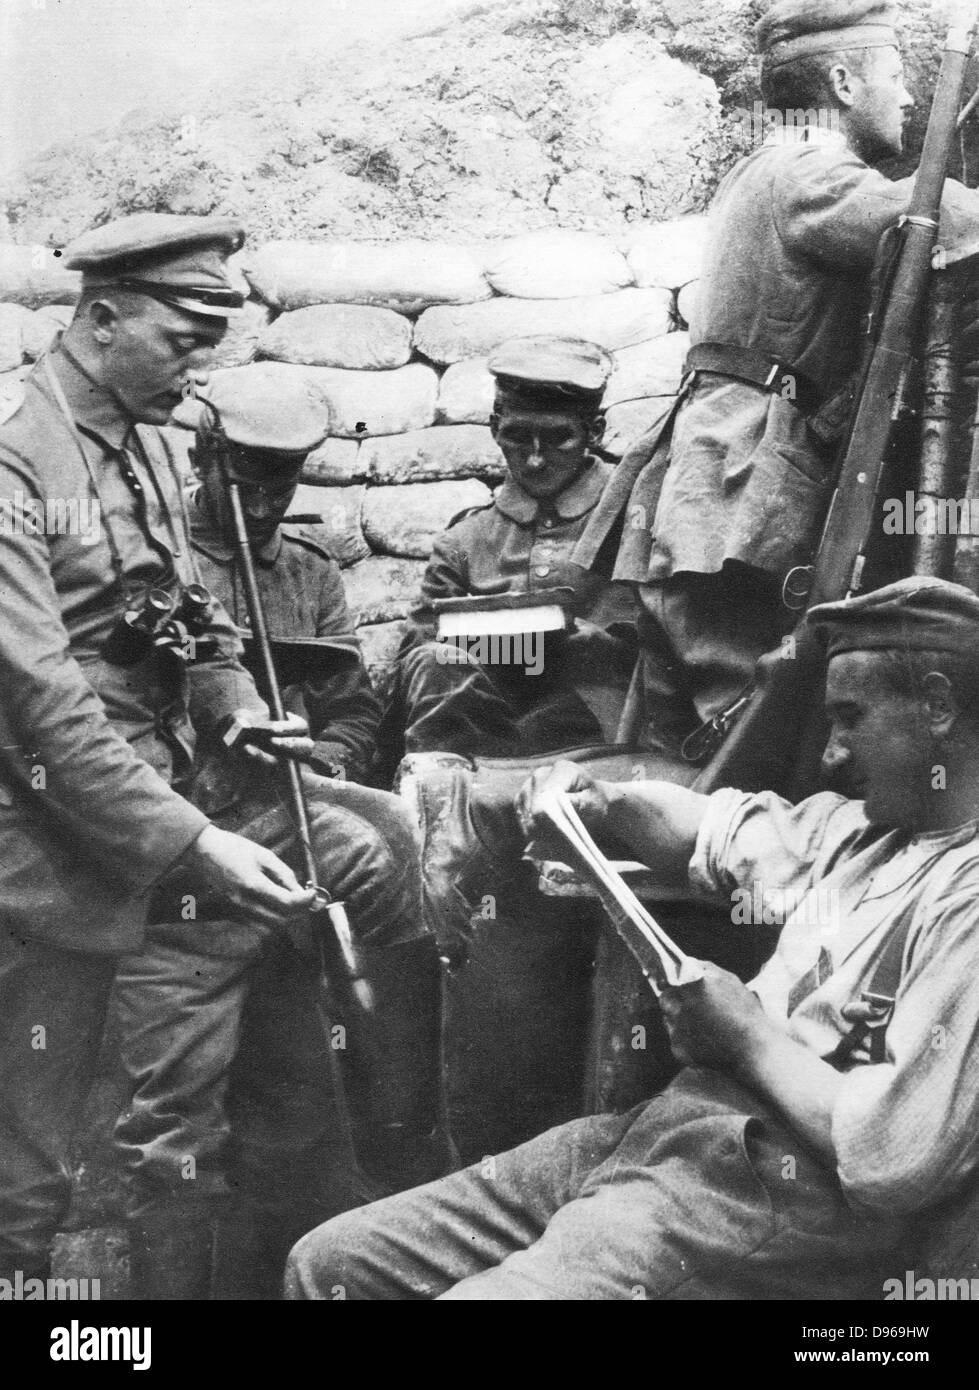 Ersten Weltkrieg: Deutsche Soldaten lesen, schreiben und Rauchen in den Schützengräben während einer Pause in Feindseligkeiten Stockfoto